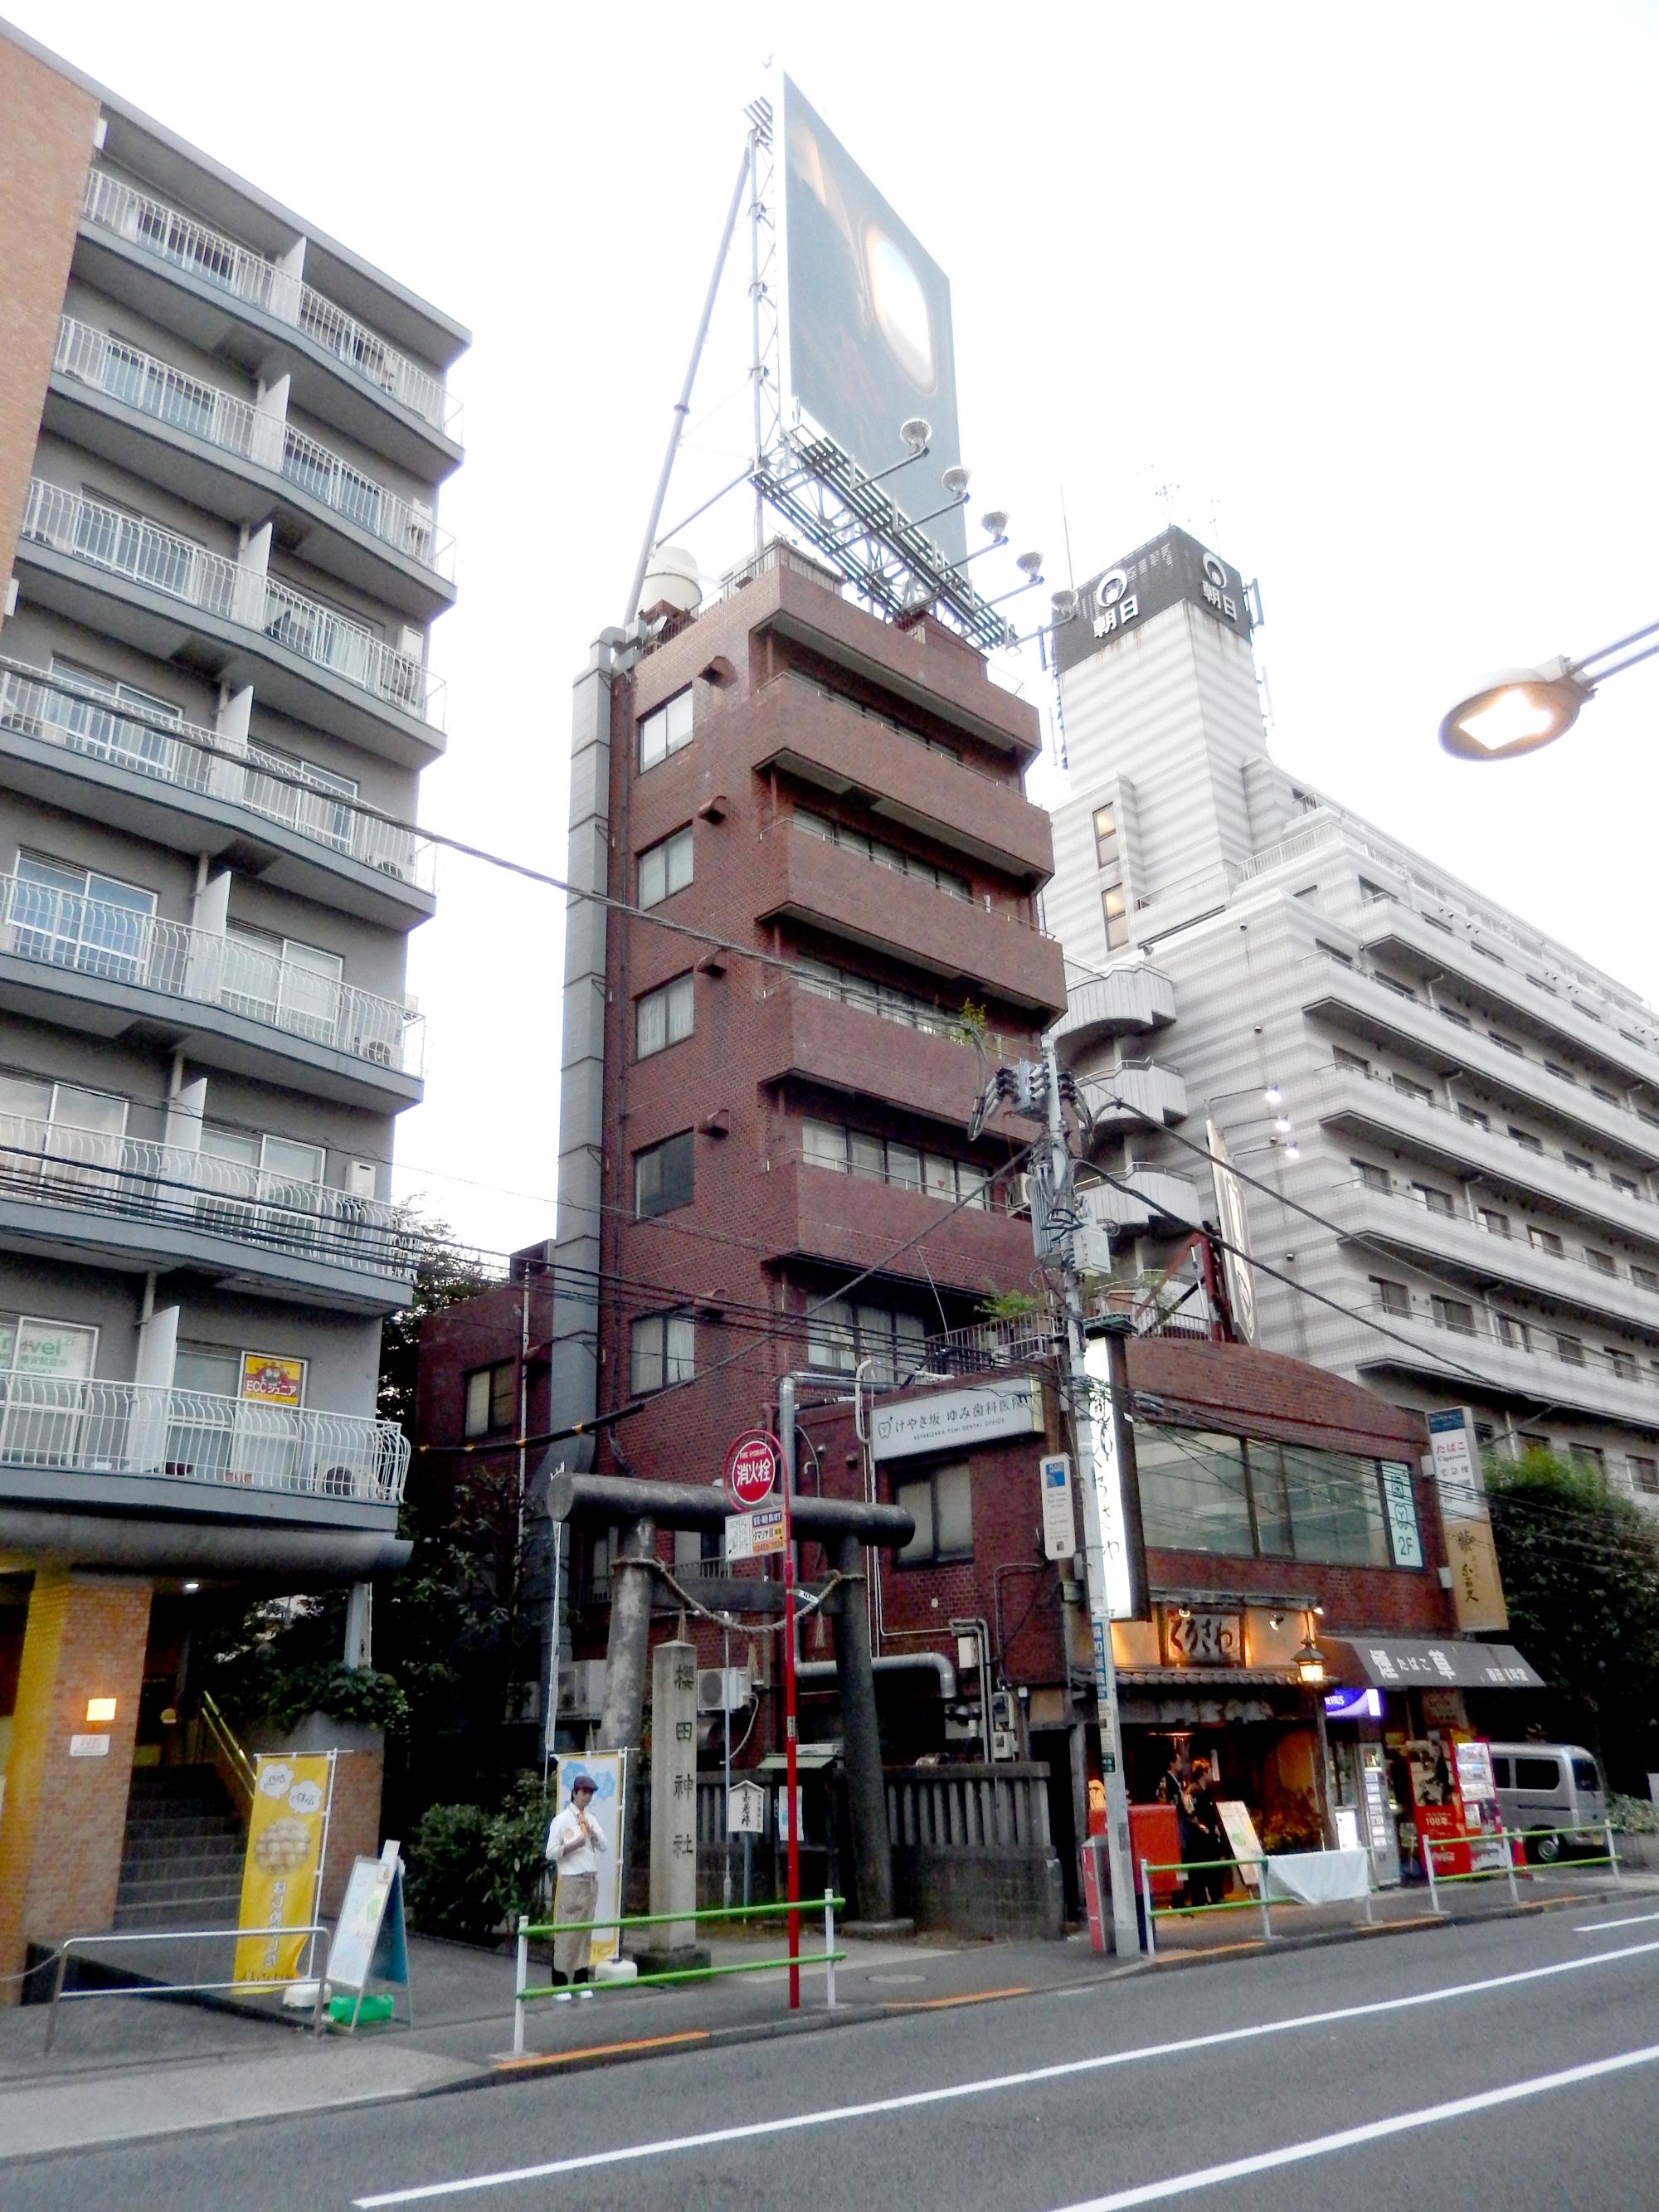 Tokyo (2015) - Narrow Building